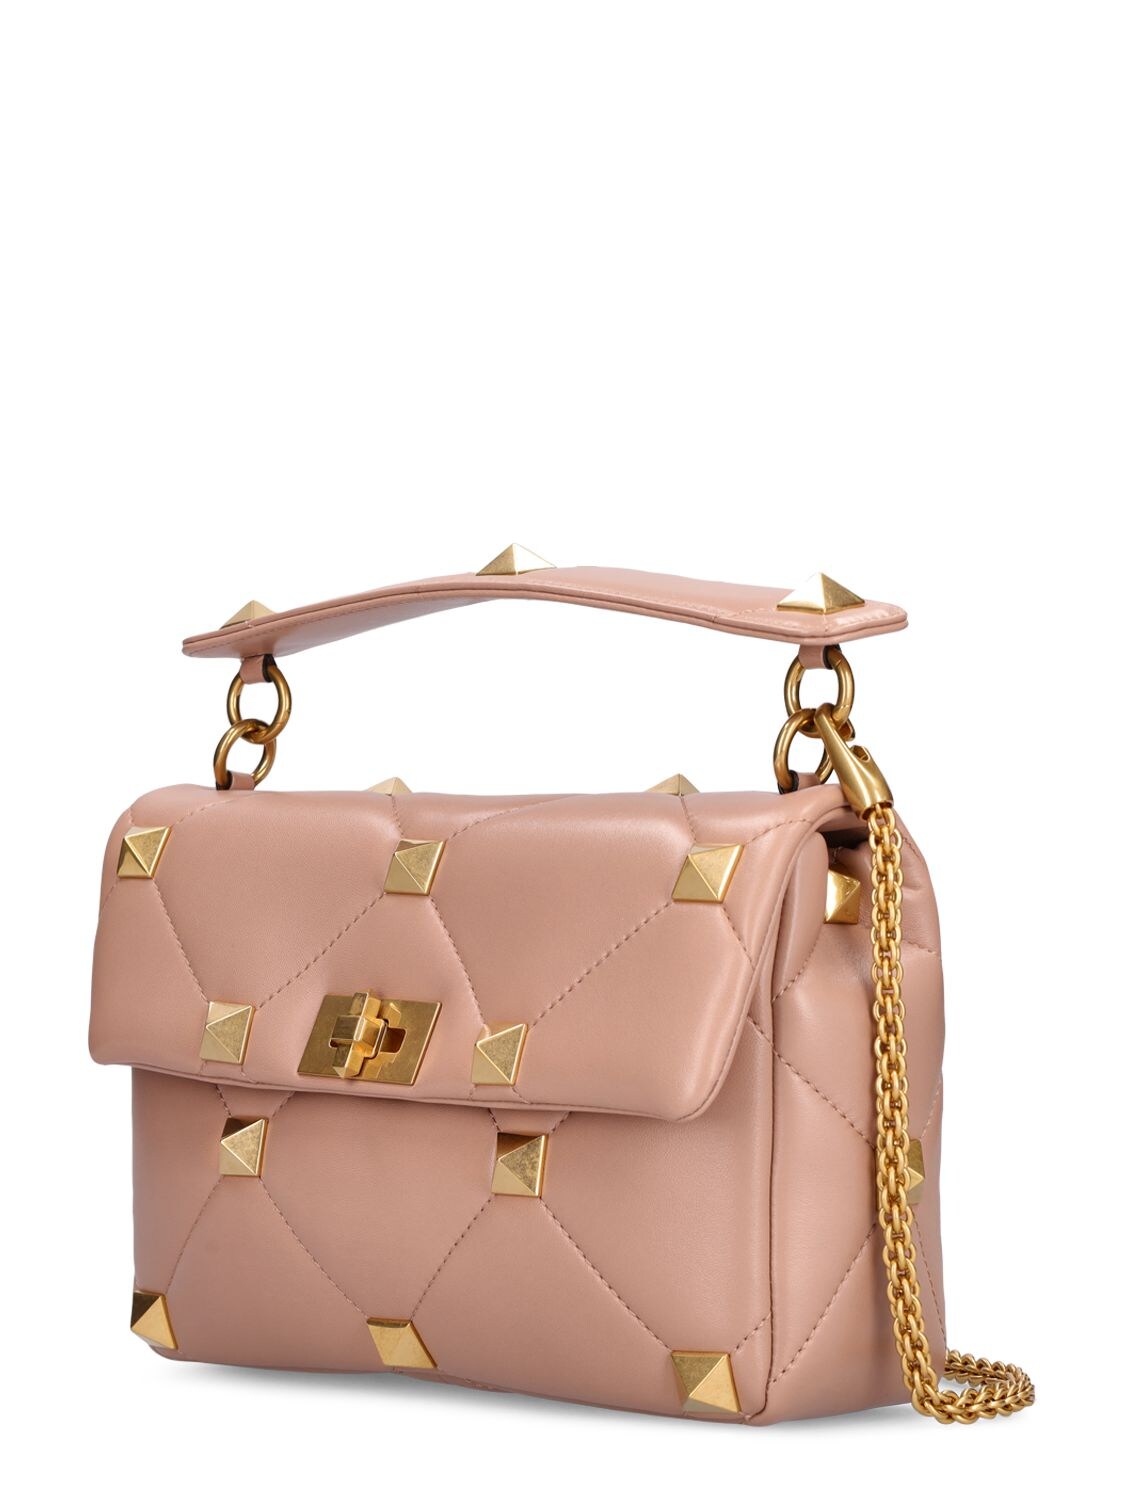 Roman Stud Large Leather Shoulder Bag in Pink - Valentino Garavani